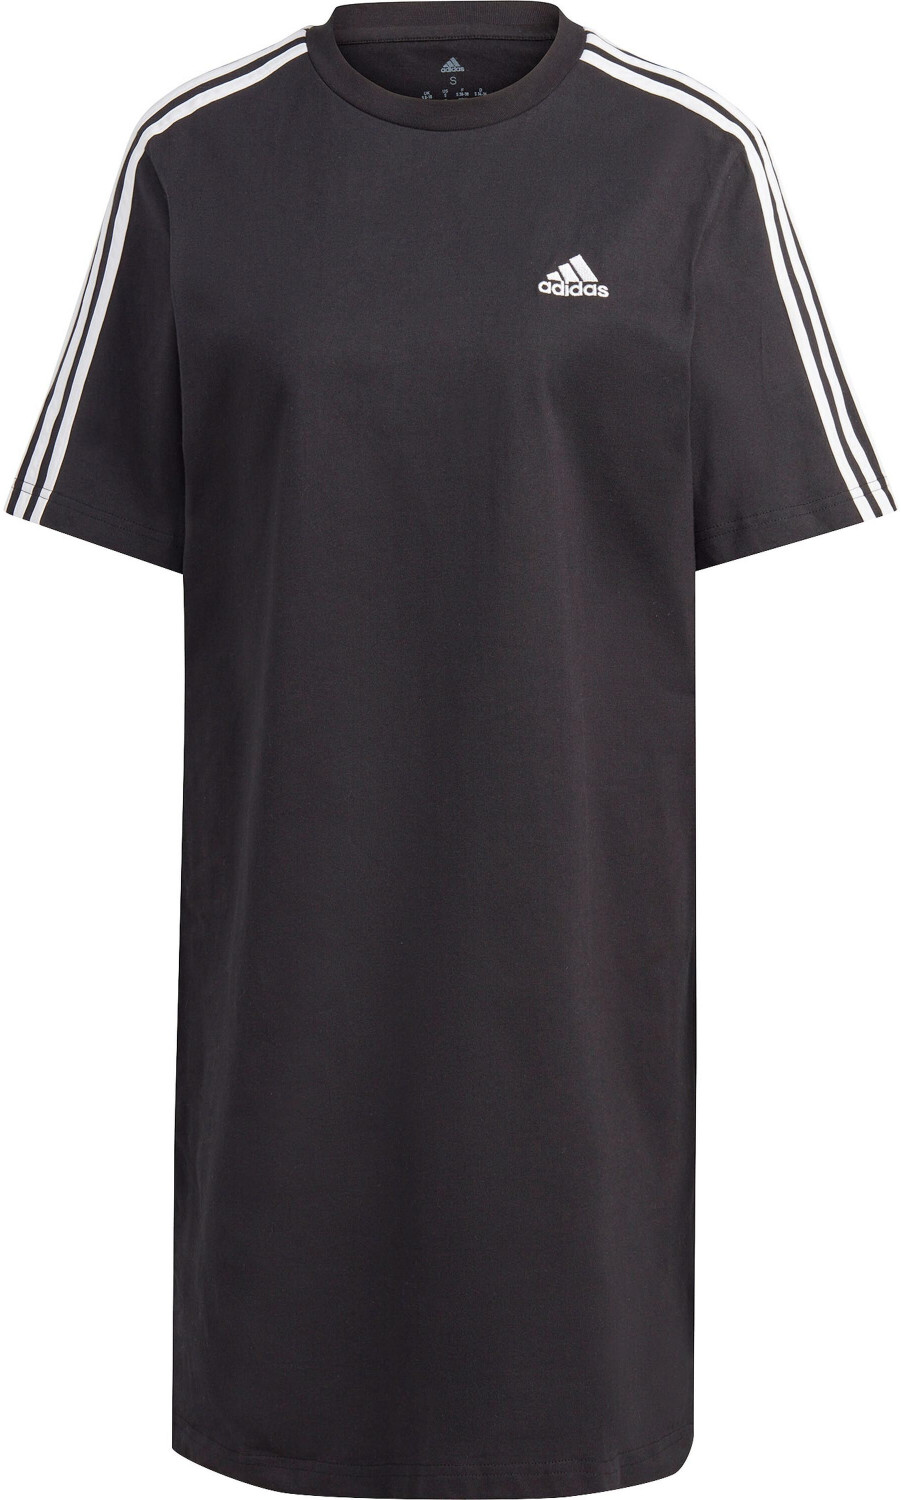 € 3-Stripes Boyfriend Essentials Single ab | Dress bei 25,83 T-Shirt Preisvergleich Adidas Jersey